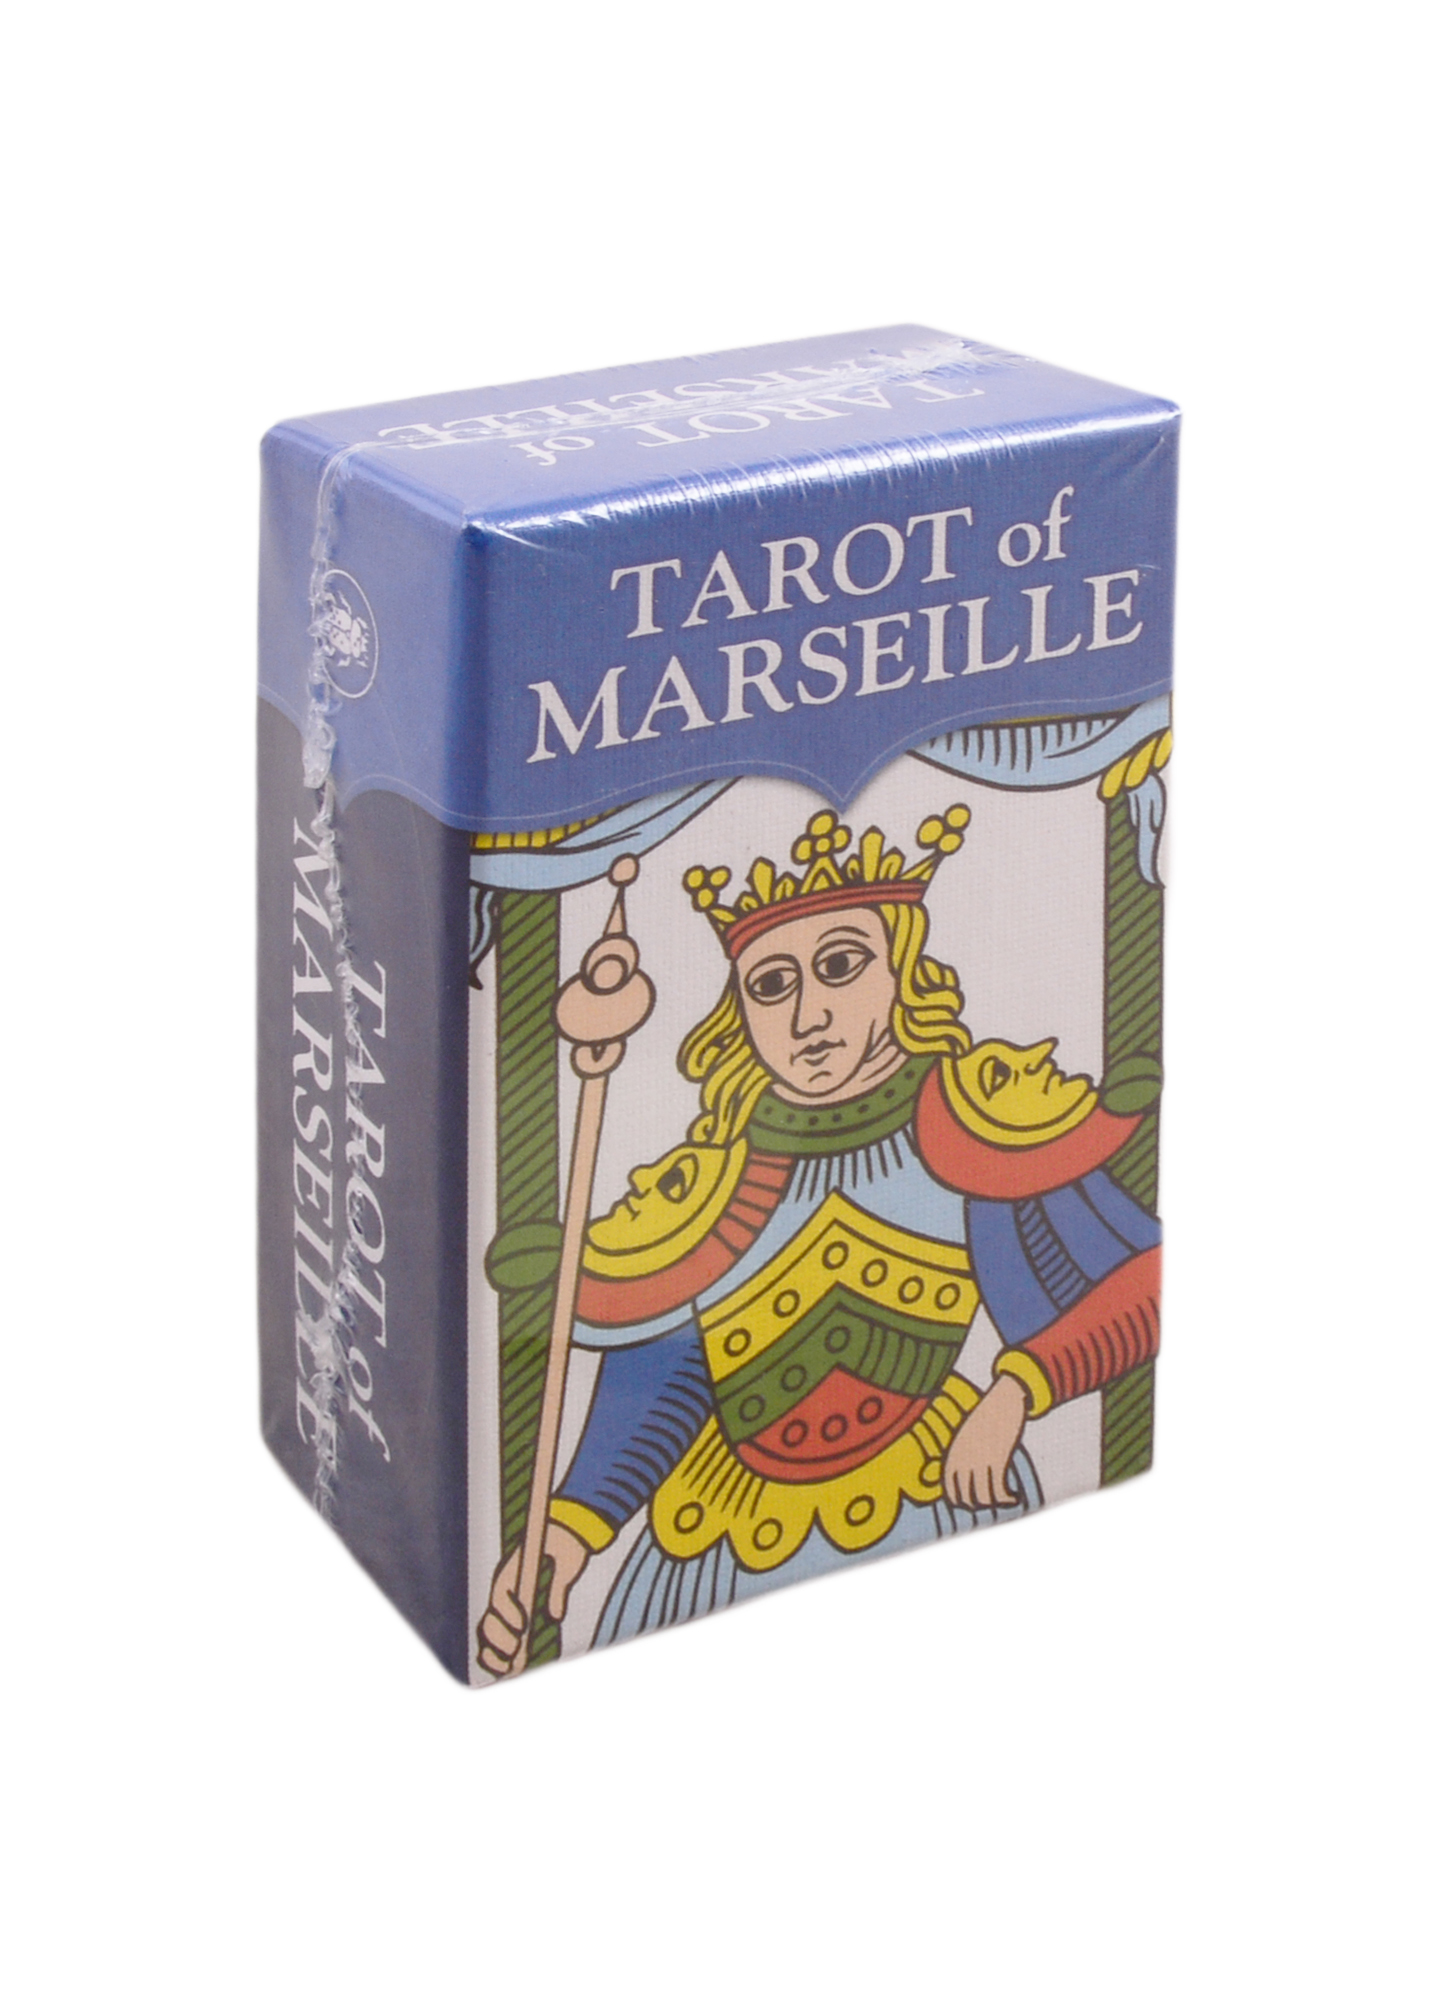 бурдель клод таро марсельское золотое golden tarot of marseille Оттолини Маттиа Tarot of Marseille / Марсельское Таро